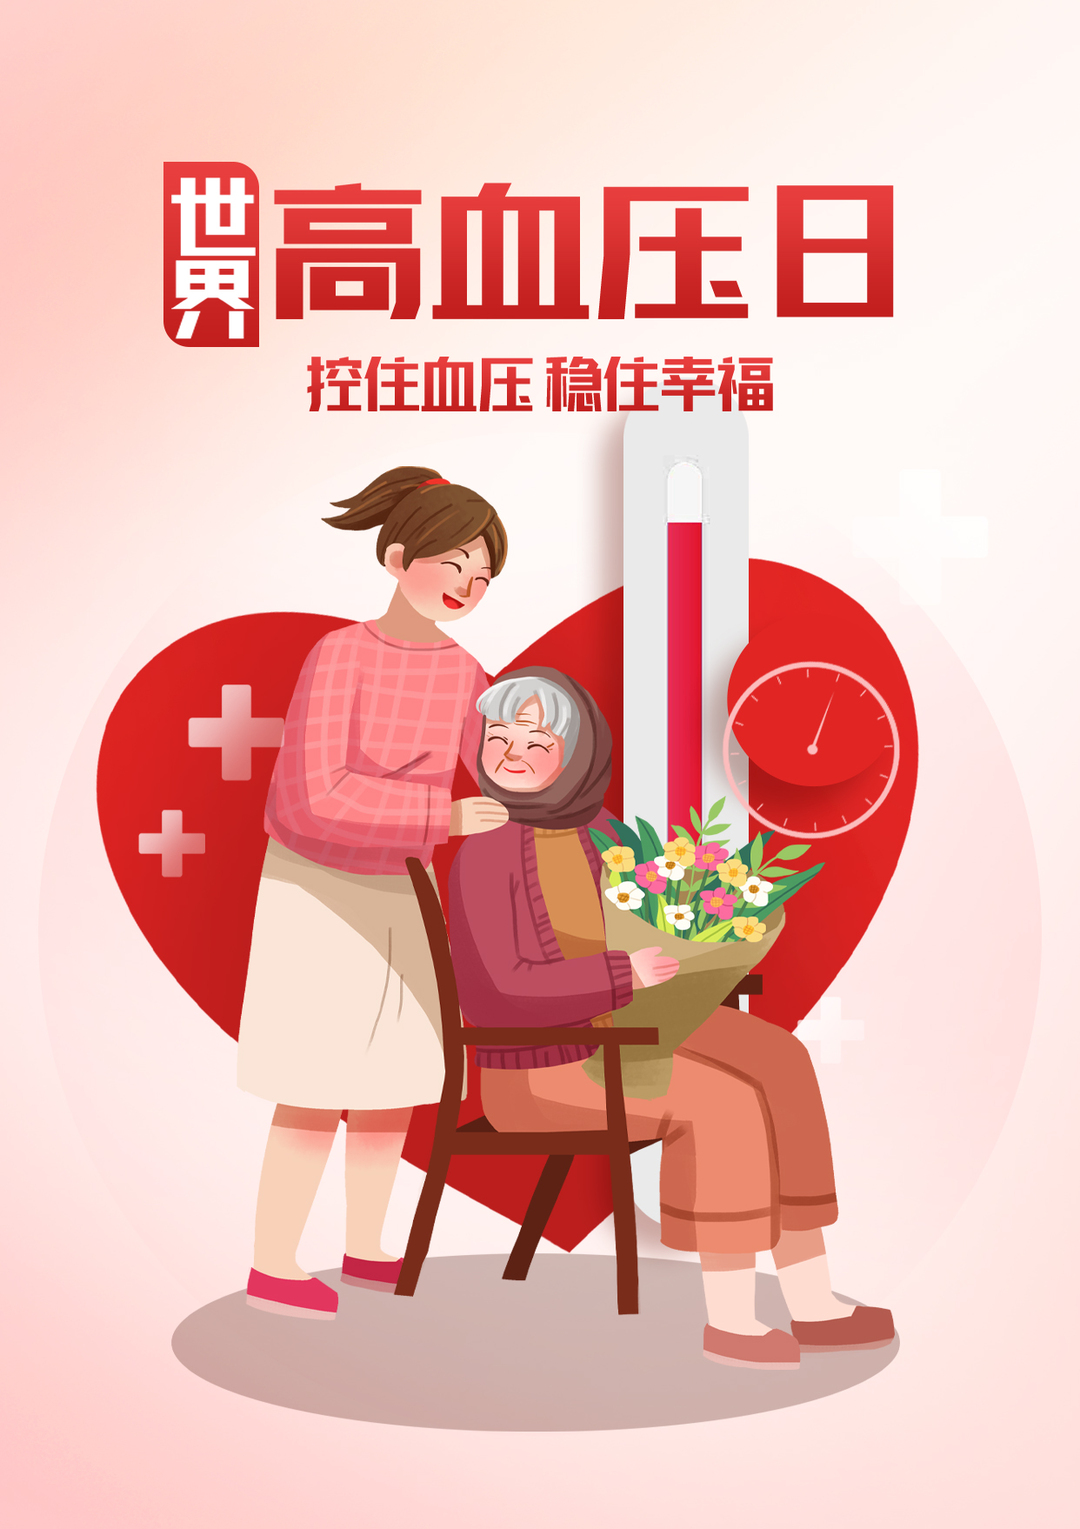 简约世界高血压日公益日节日医疗宣传海报.jpg